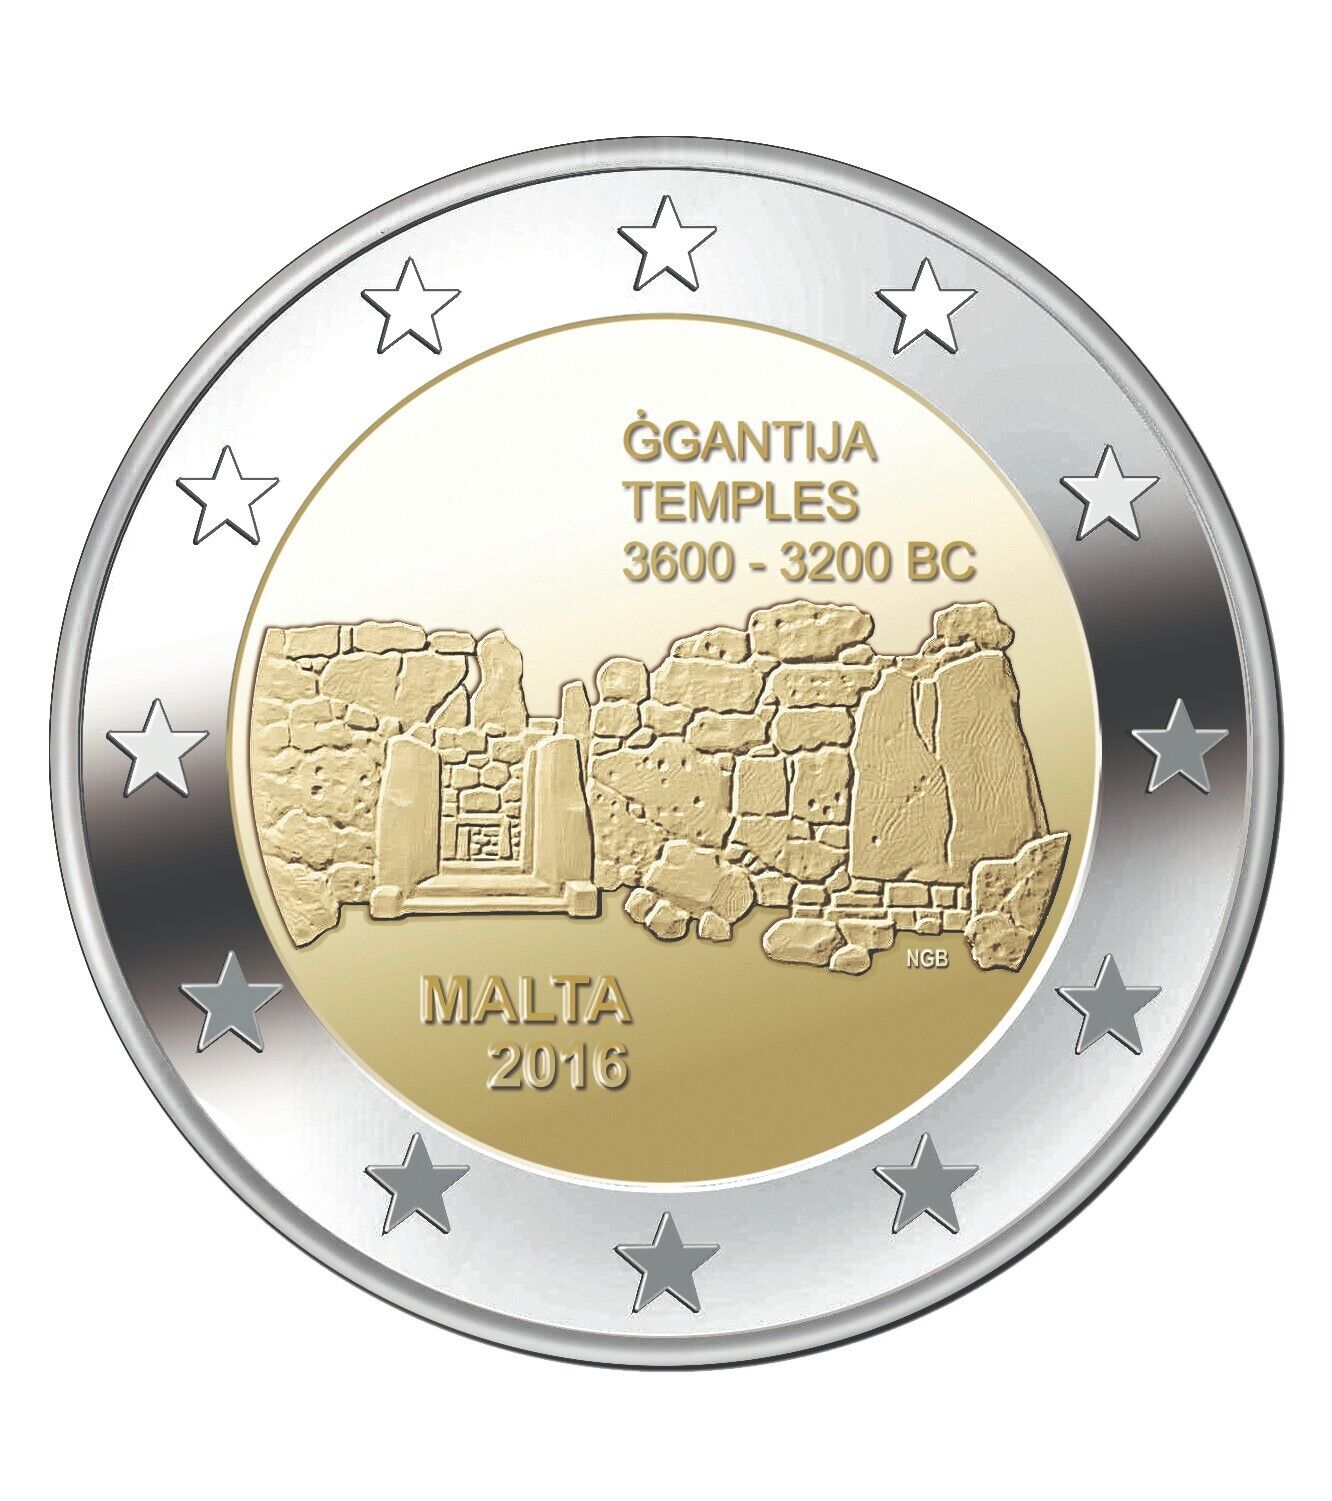 2016 Malta GGANTIJA Temple Uncirculated 2 Euro Commemorative Coin